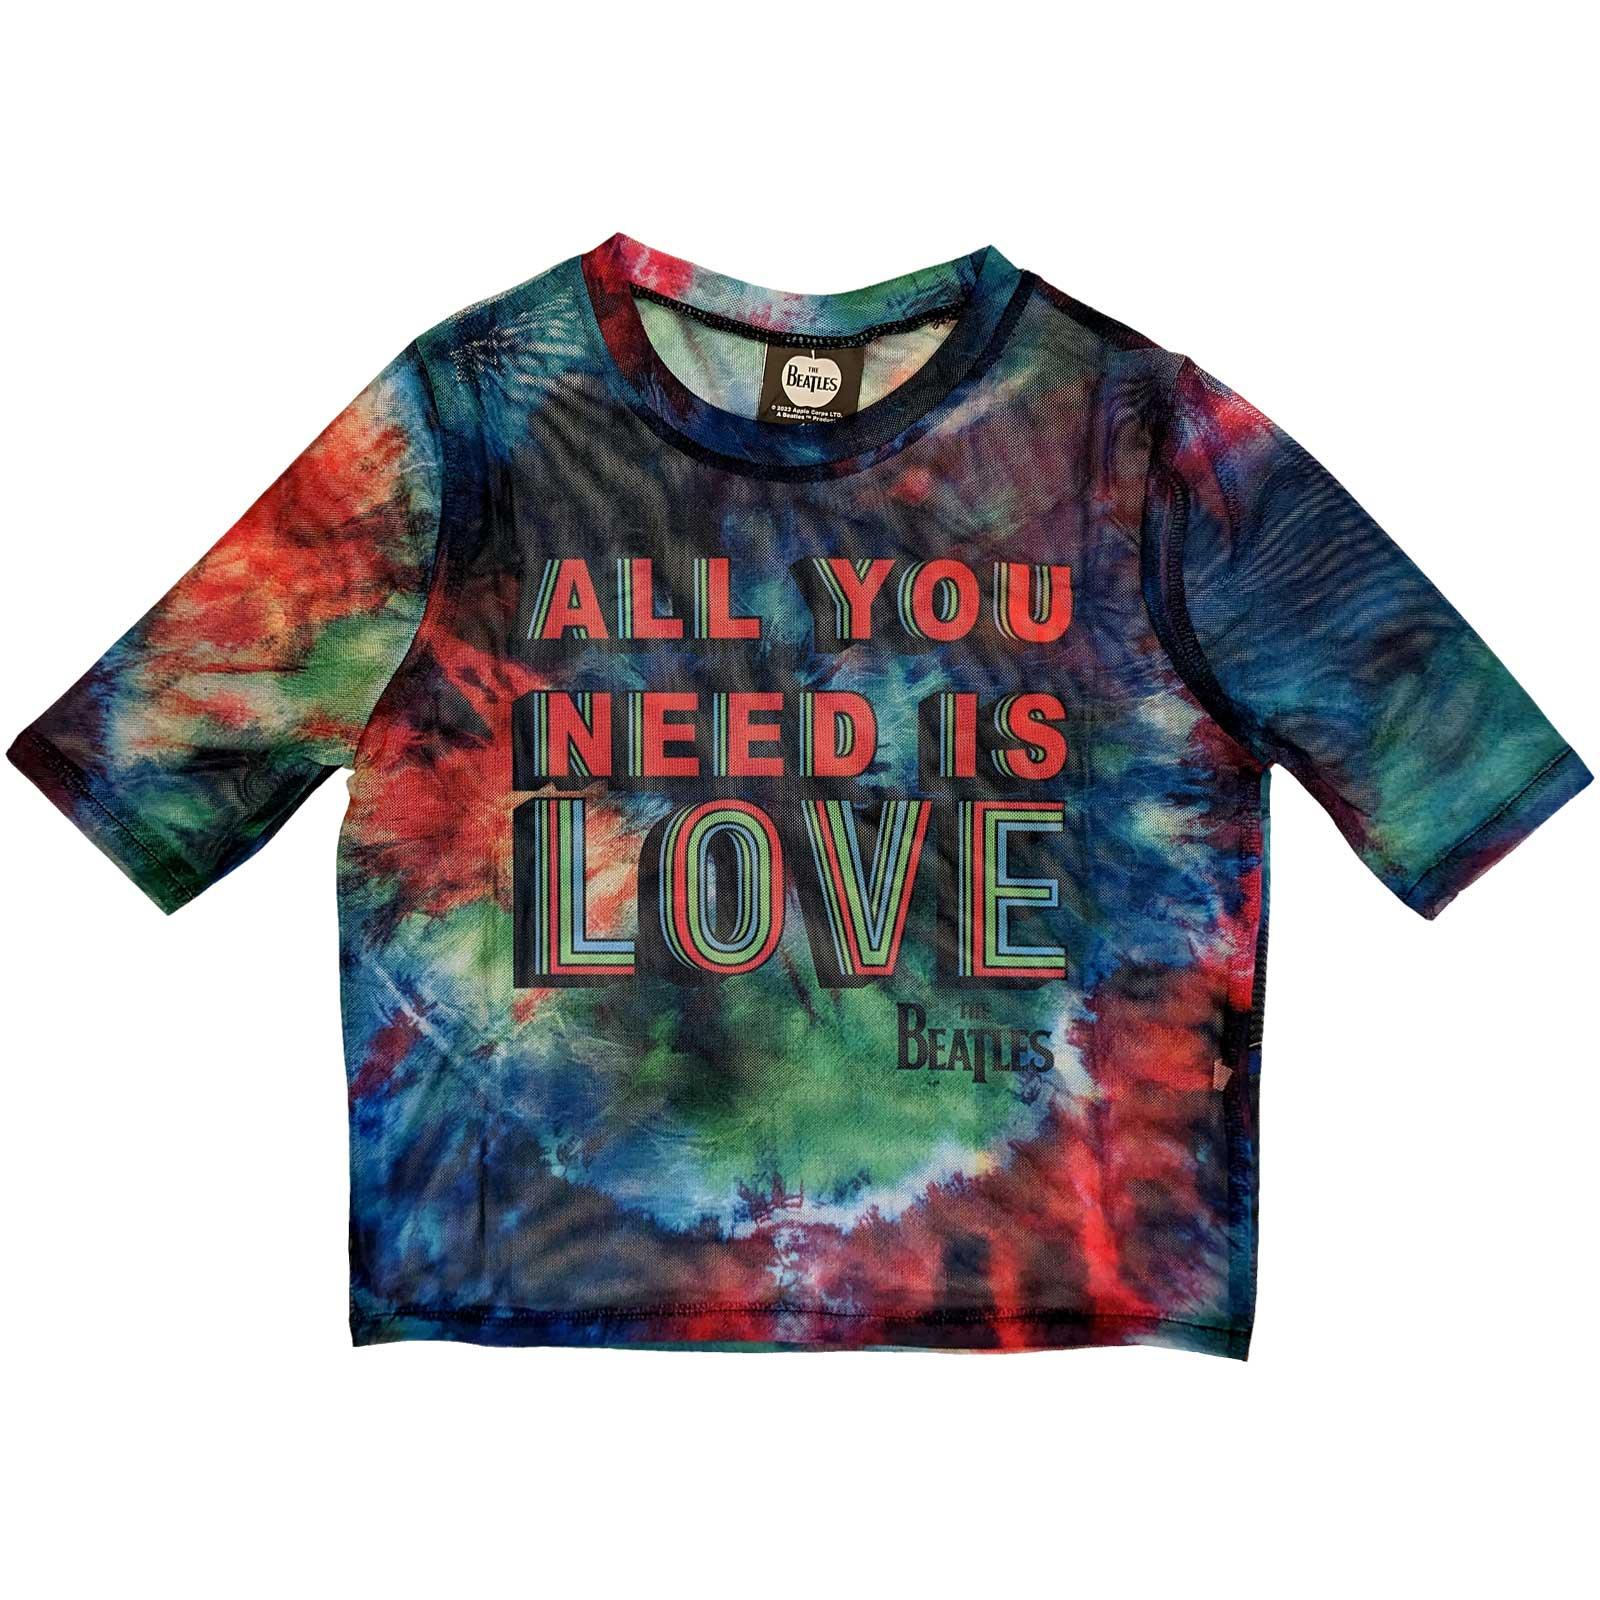 (ビートルズ) The Beatles オフィシャル商品 レディース All You Need Is Love Tシャツ メッシュ クロップ丈 半袖 トップス 【海外通販】